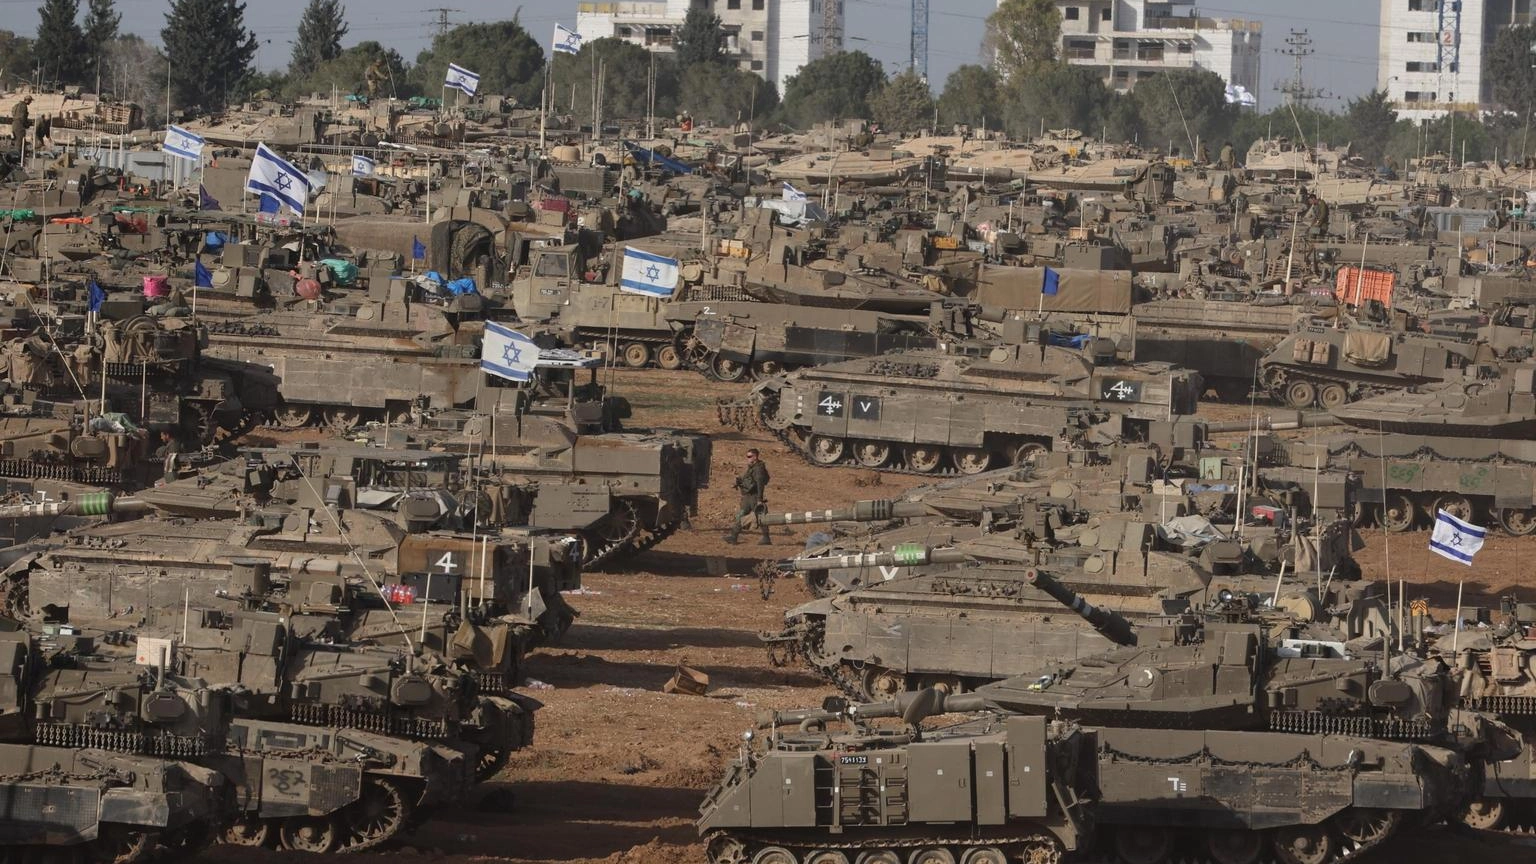 Onu, l'invasione di Rafah sarebbe una catastrofe colossale